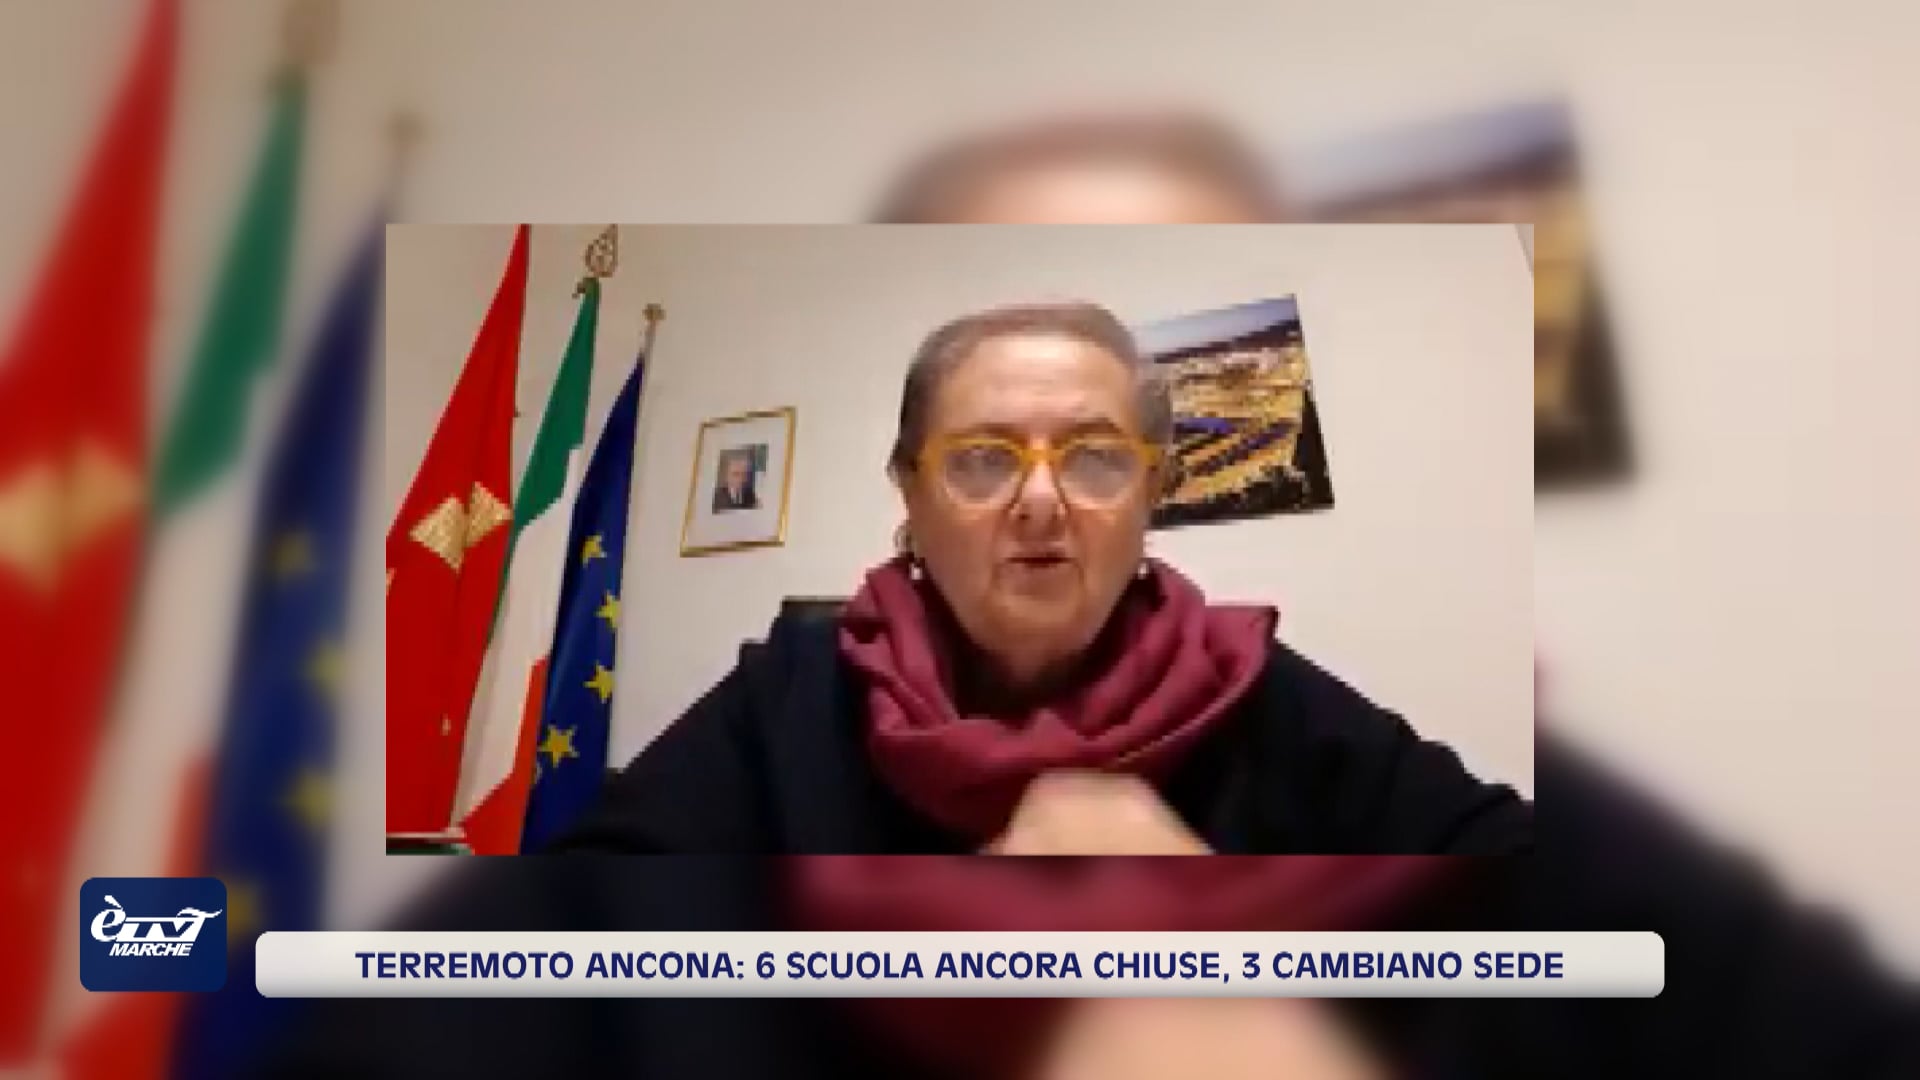 Terremoto Ancona: sei scuole ancora chiuse, tre cambieranno sede - VIDEO